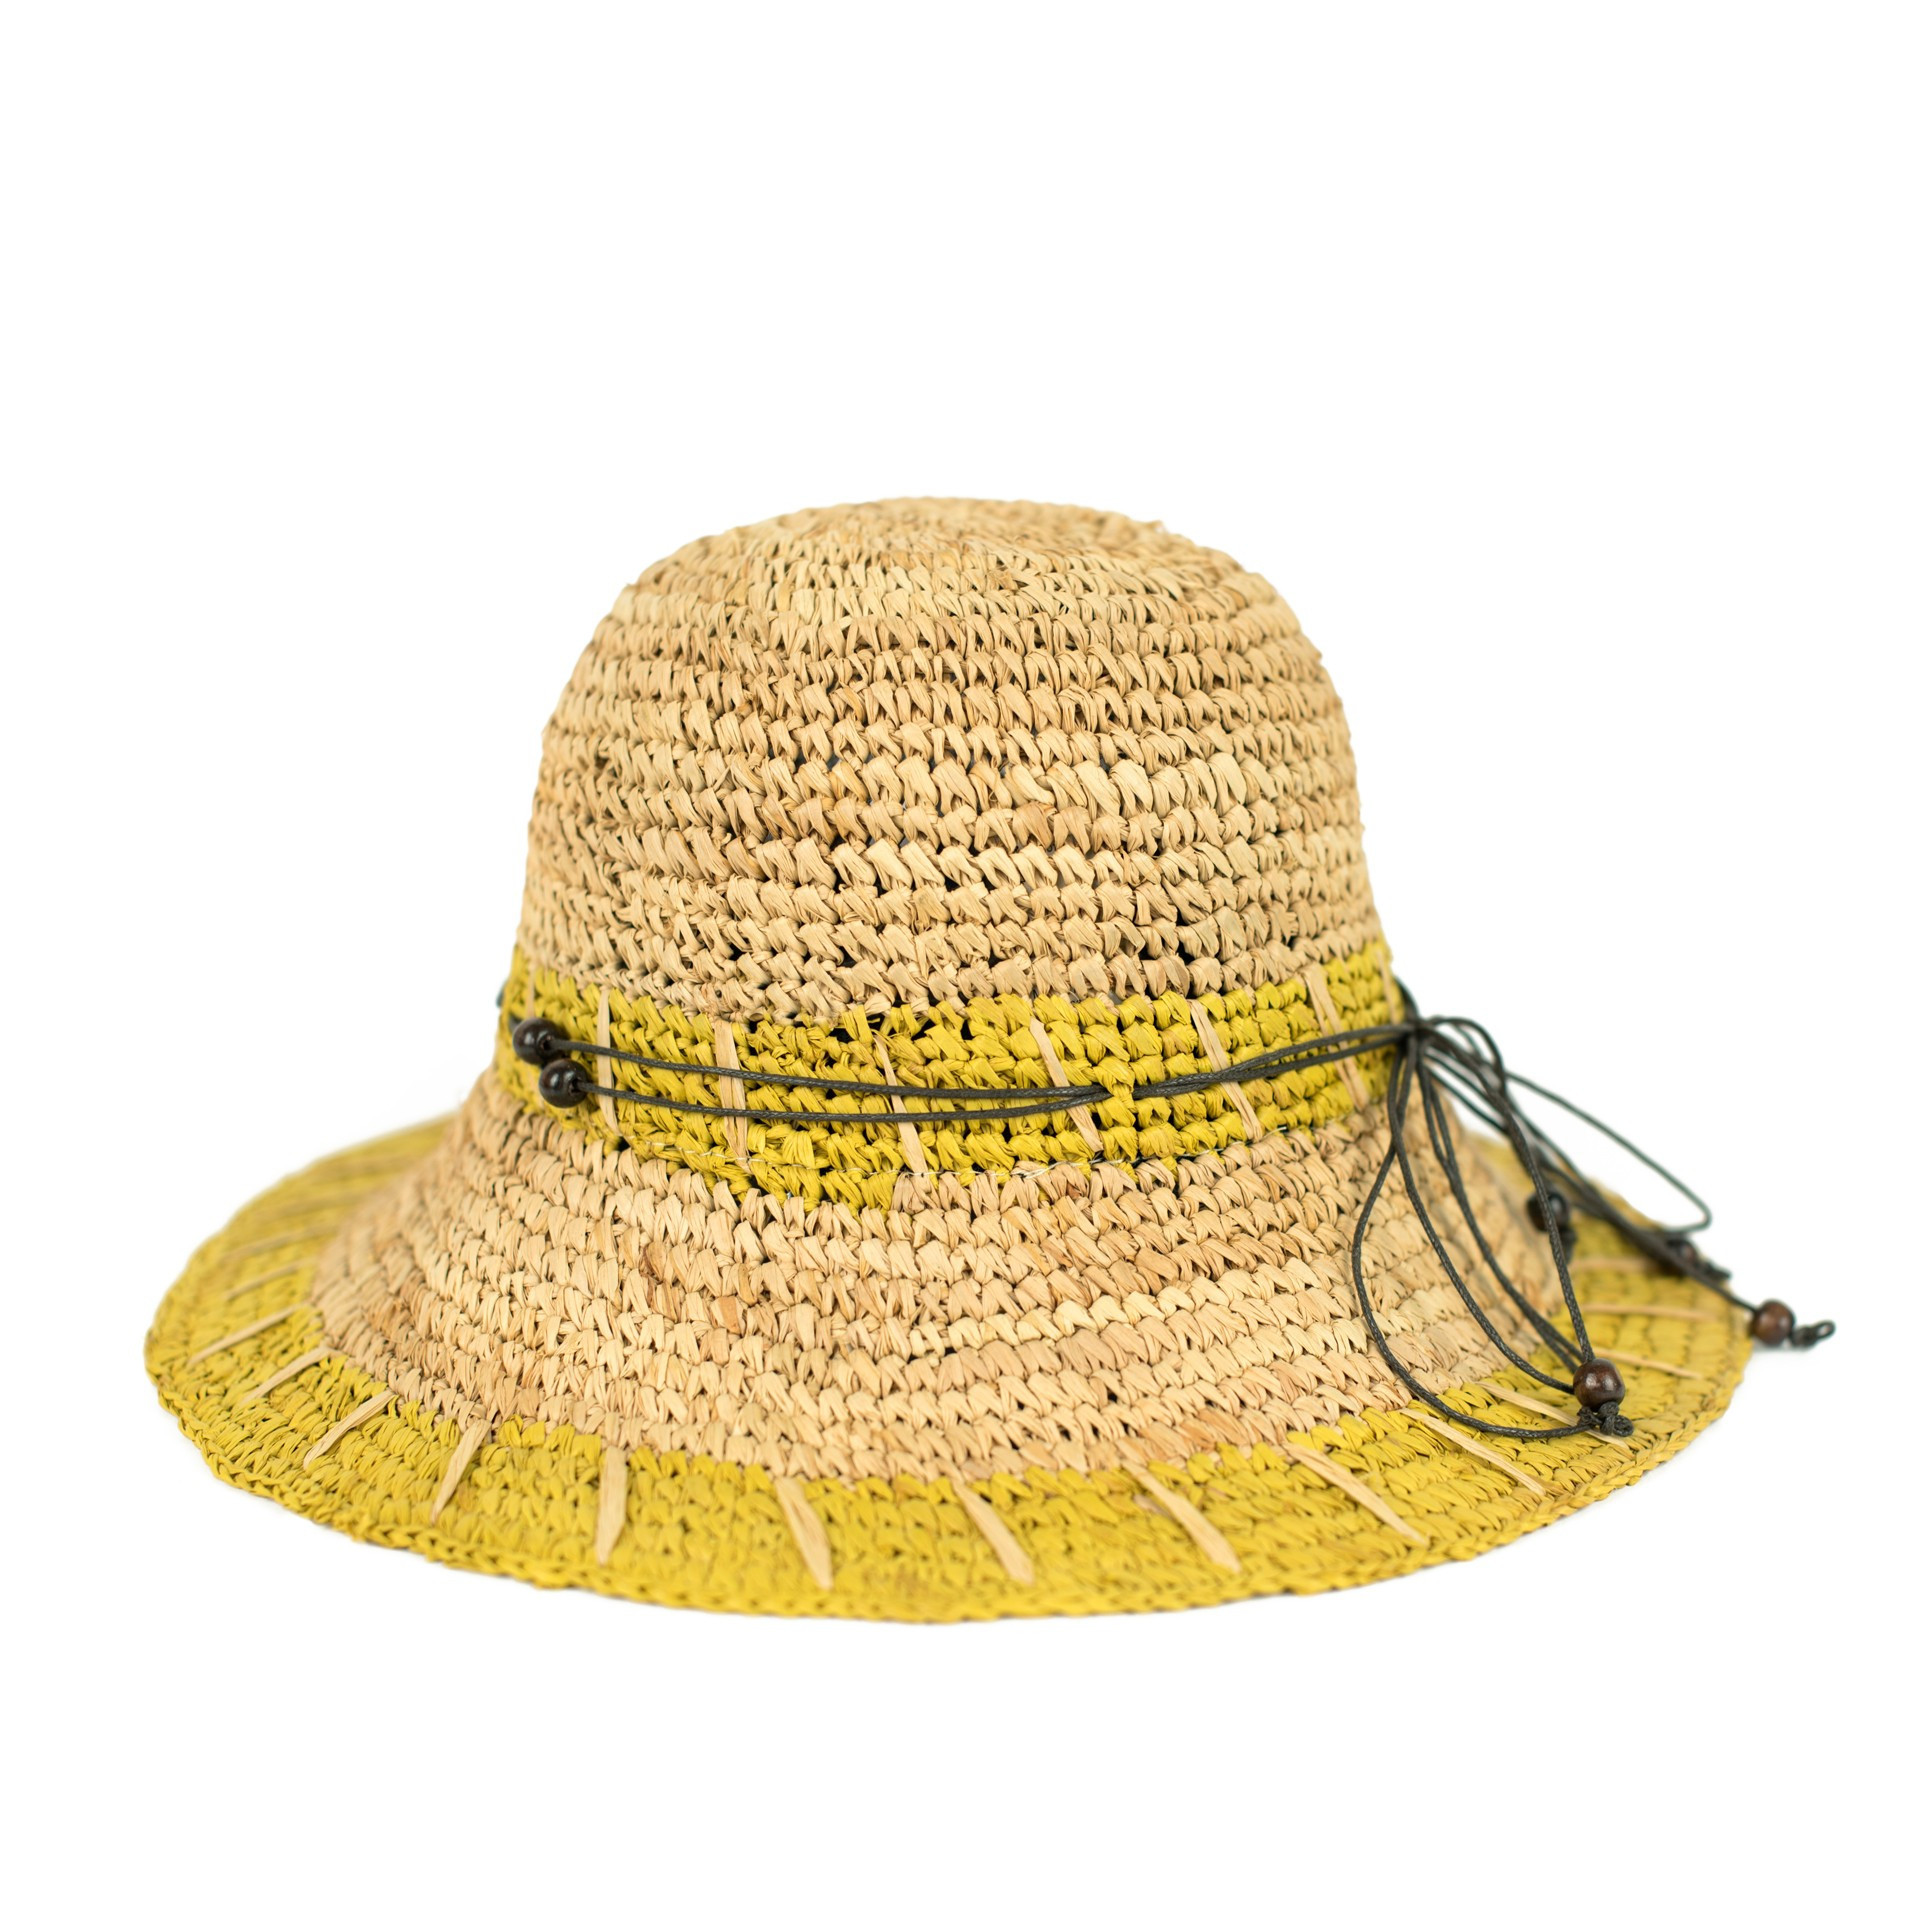 Dámský klobouk hořčicový - Art Of Polo CZ21148-6 one size one size